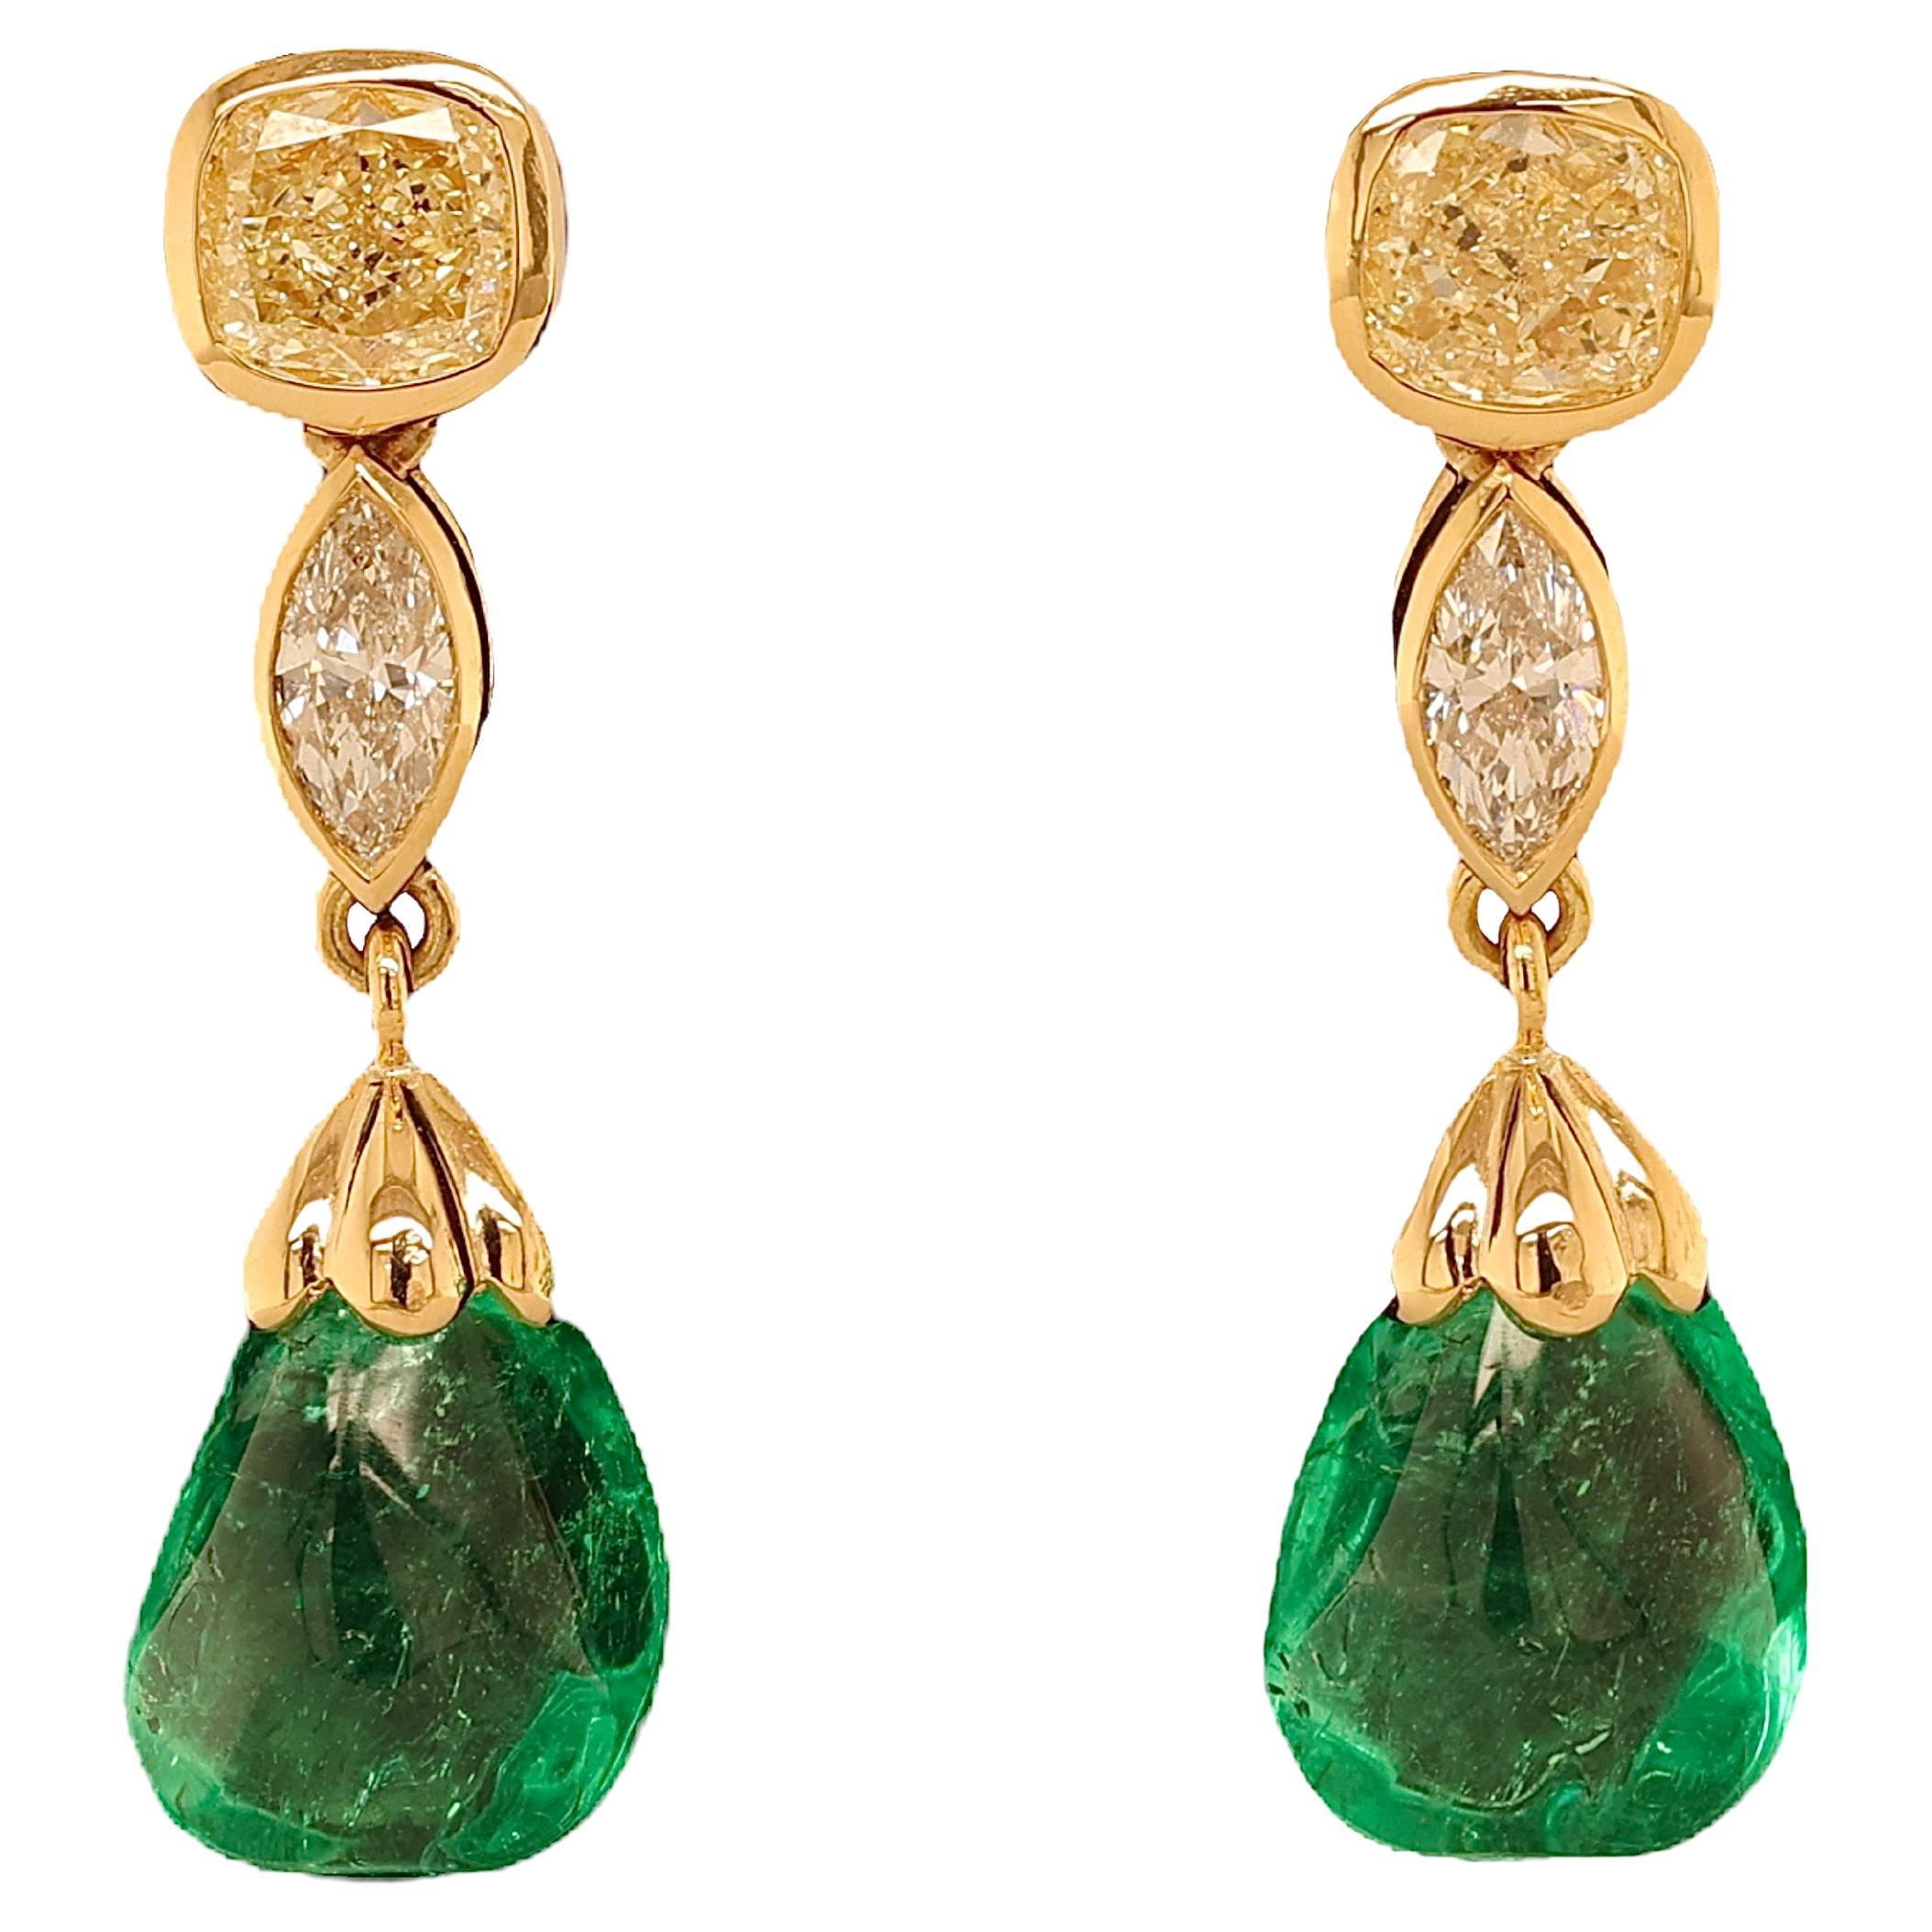 18 Kt, Earrings Minor Colombian 5.39 & 5.14ct Emeralds, Diamonds, CGL Certified For Sale